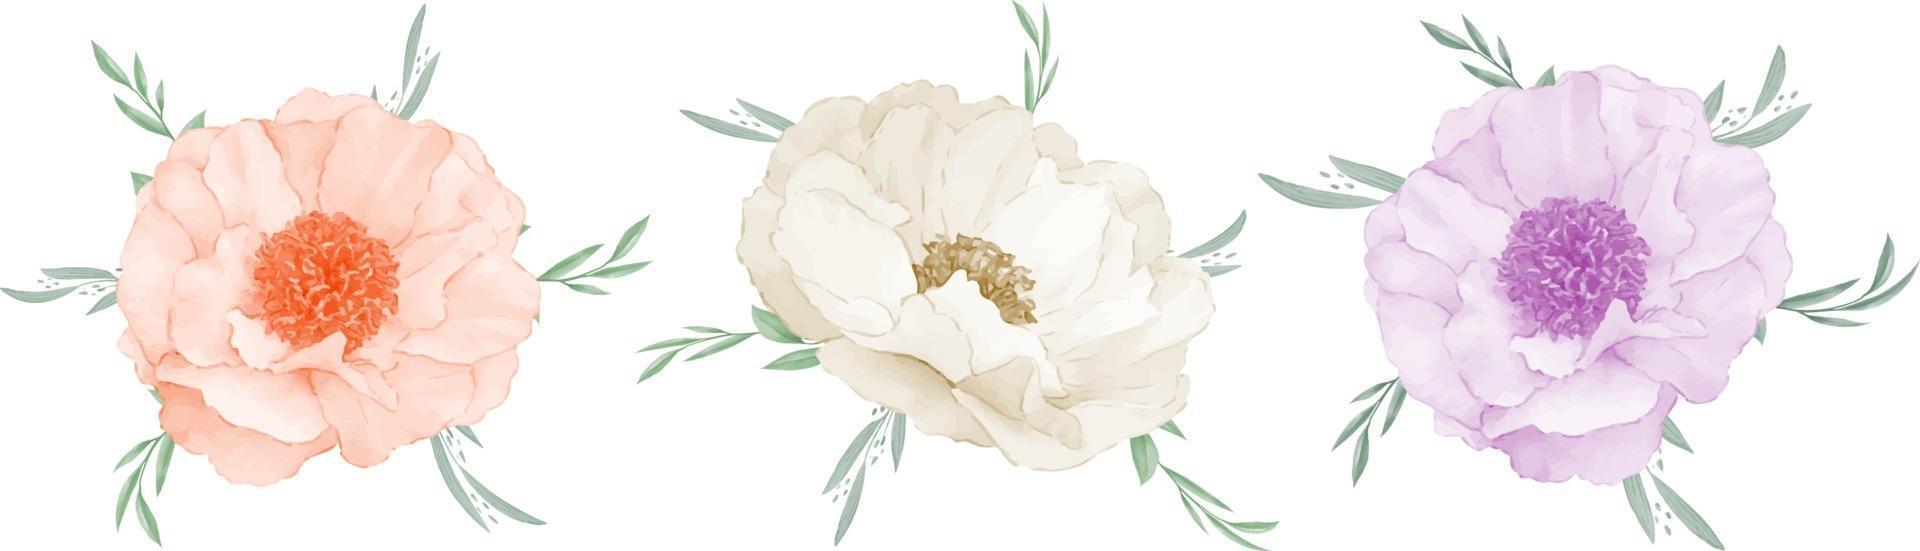 anemone bouquet di fiori acquerello isolato su sfondo bianco vettore